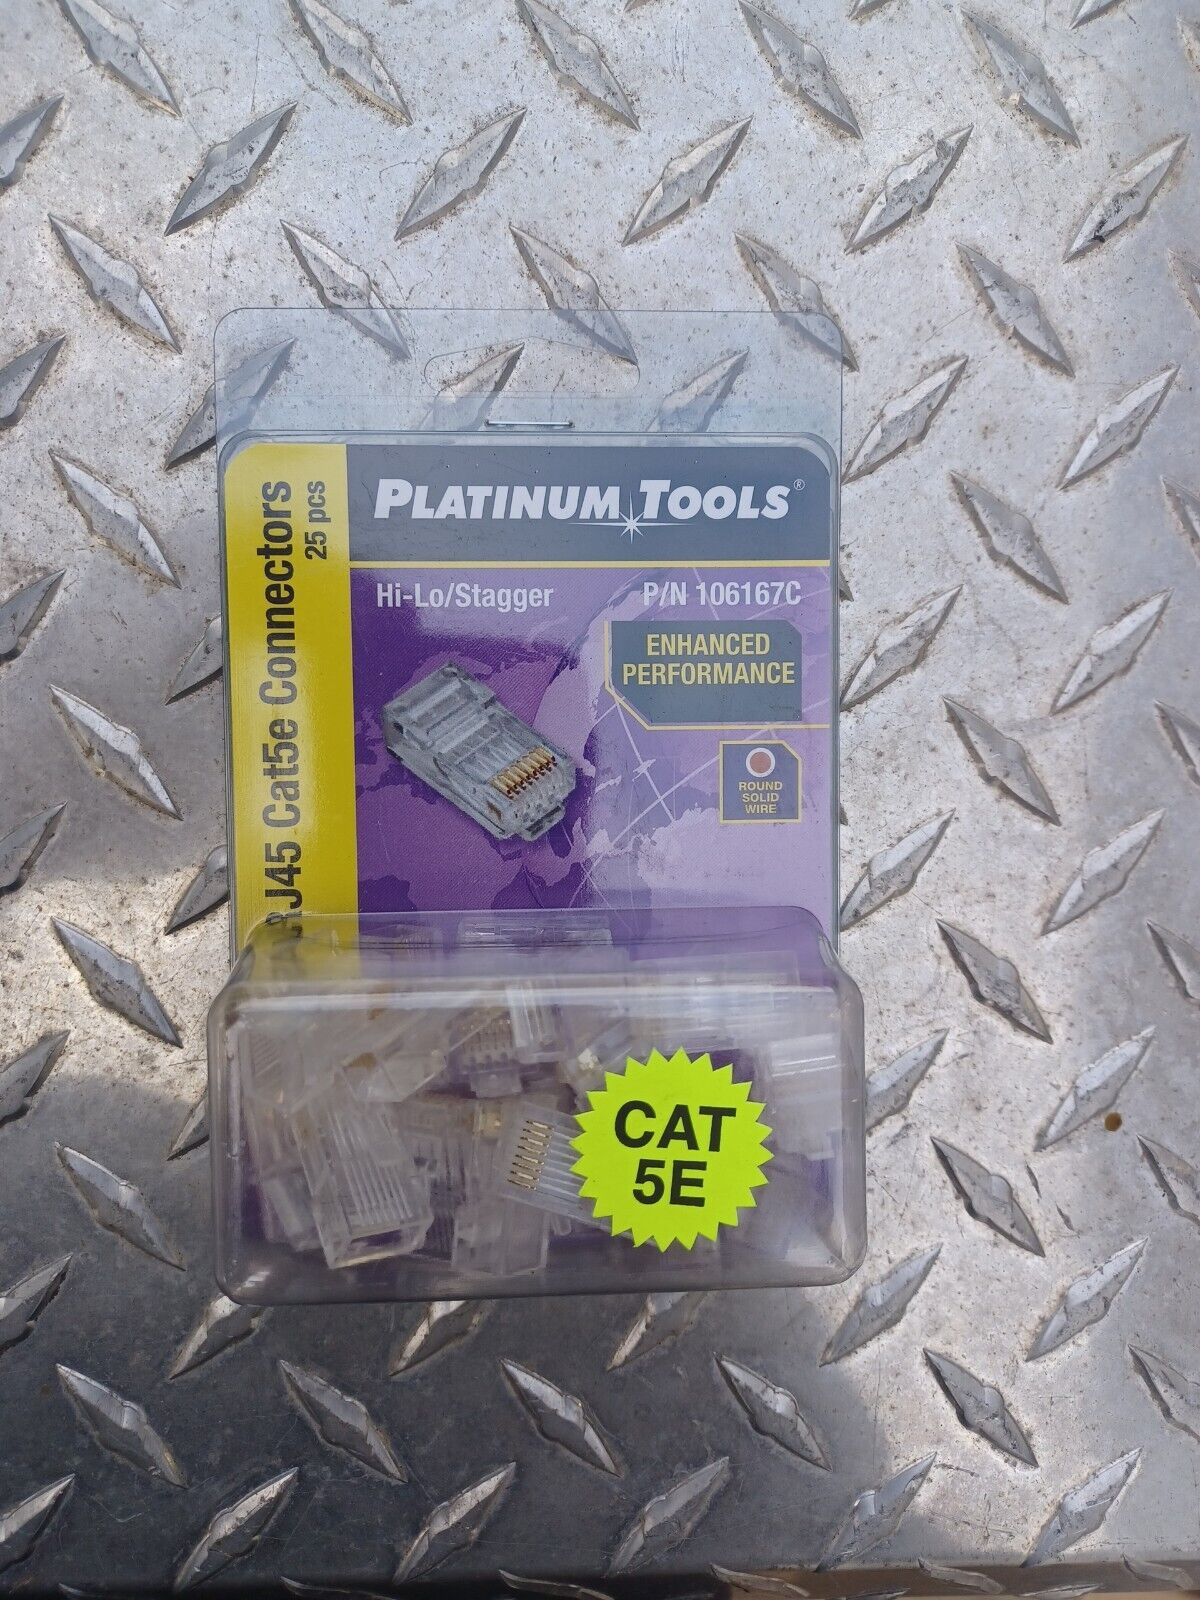 Platinum Tools RJ-45 Cat5/5e Connectors, Clamshell pack of 25 P/N 106167C